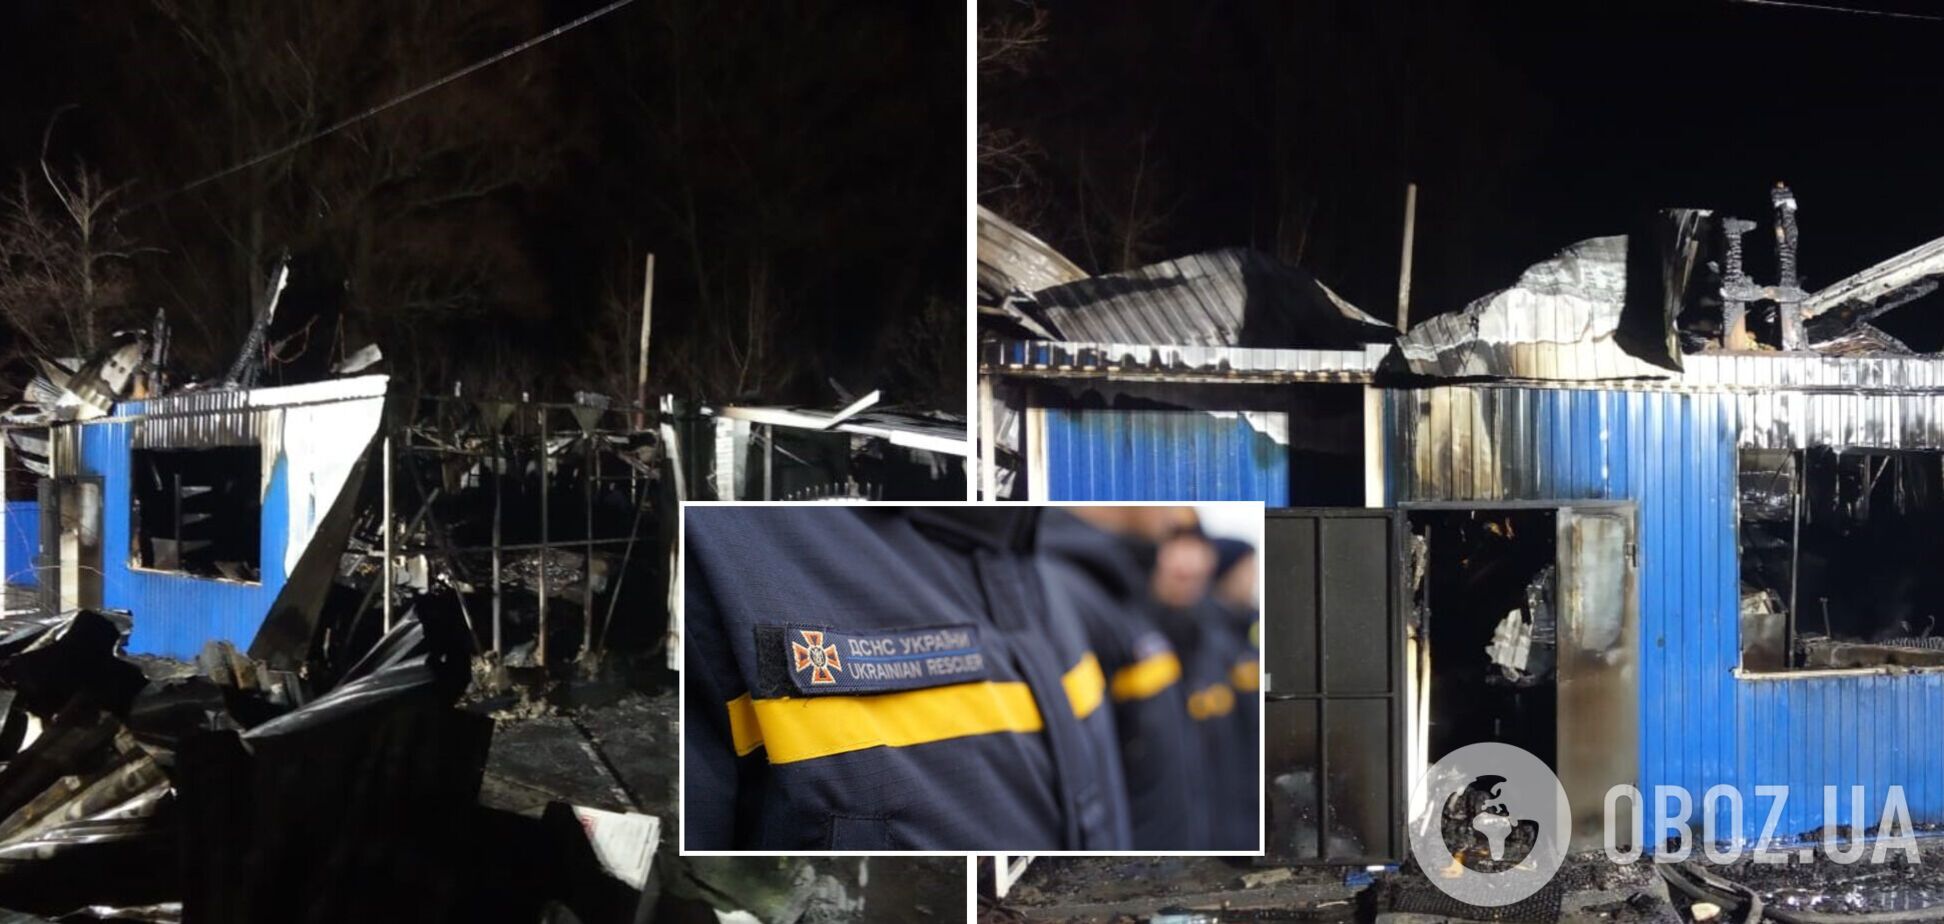 На Луганщине прогремел взрыв в кафе: много пострадавших. Фото и видео